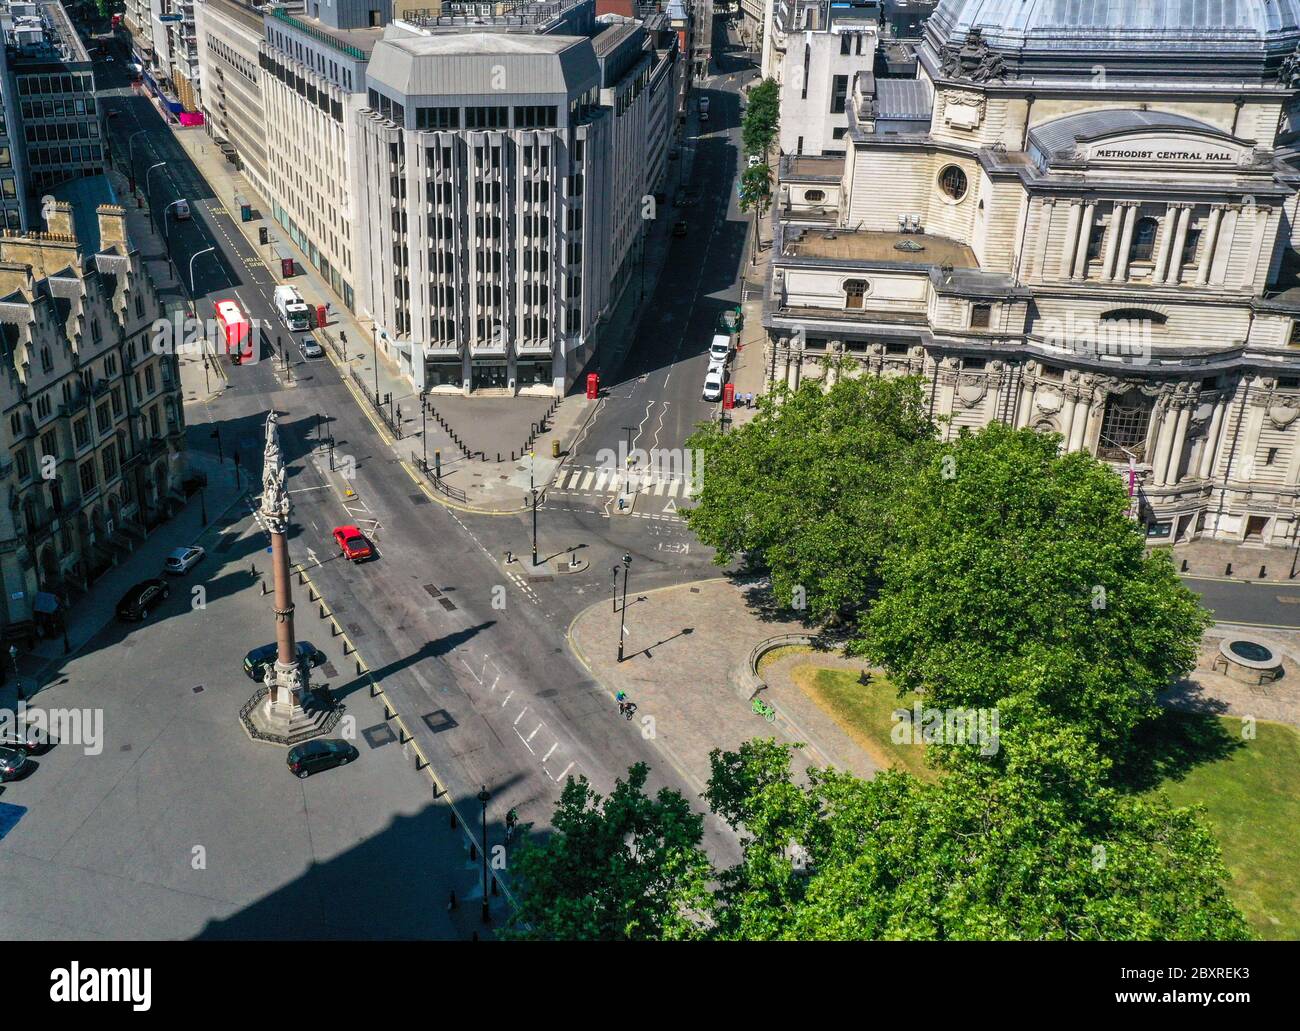 Una vista aerea di Londra, all'incrocio tra Victoria Street e Tothill Street, che mostra il Crimea e il memoriale indiano Mutiny, il dipartimento per l'istruzione (in alto a sinistra), la Barclays Bank (centro) e la Methodist Central Hall sulla Story's Gate (a destra). Foto Stock